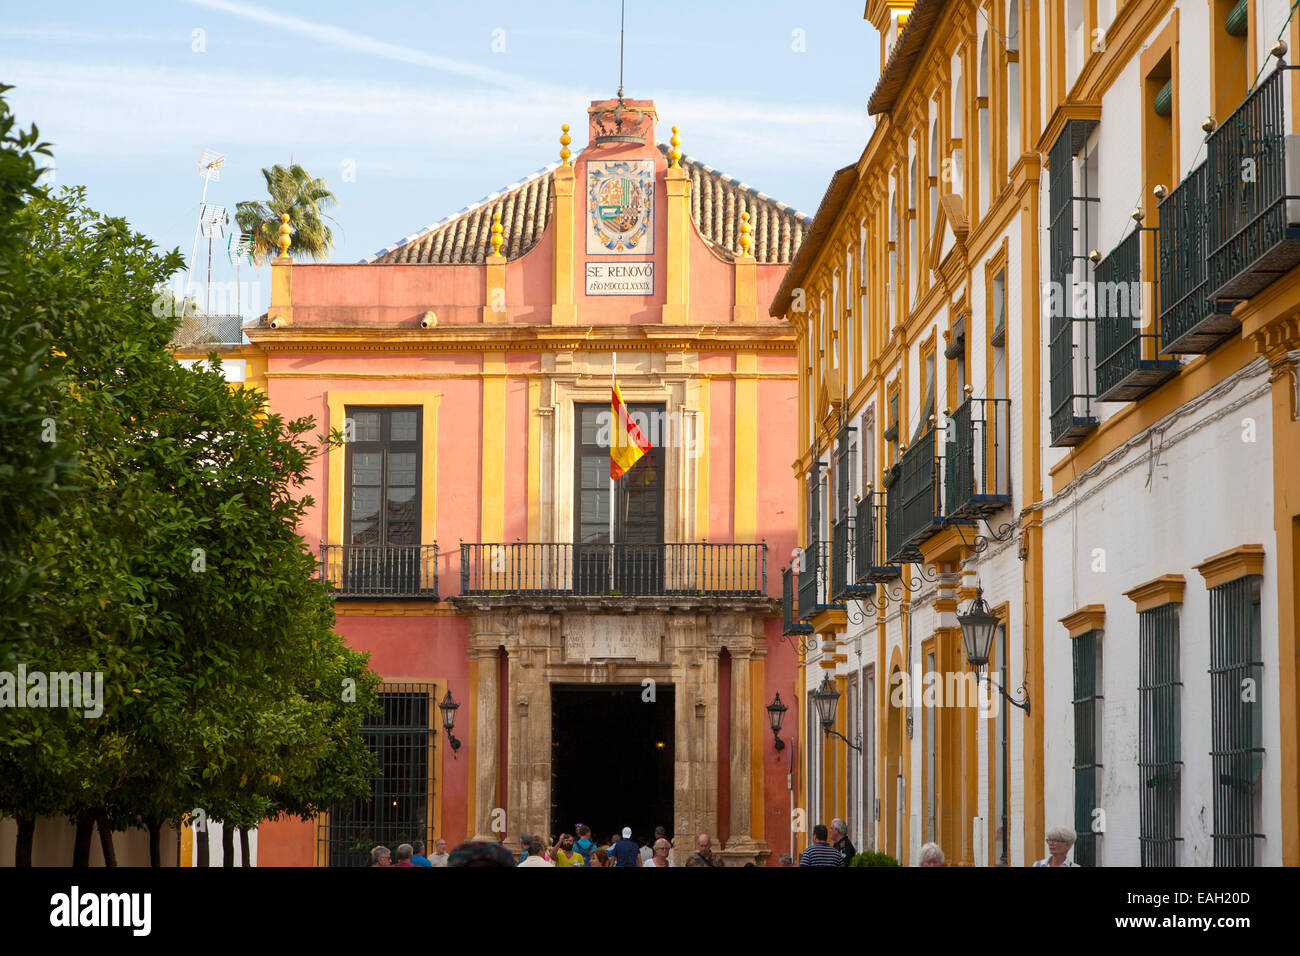 Bandiera spagnola a volare su edifici storici nel palazzo di Alcazar area, Siviglia, Spagna Foto Stock